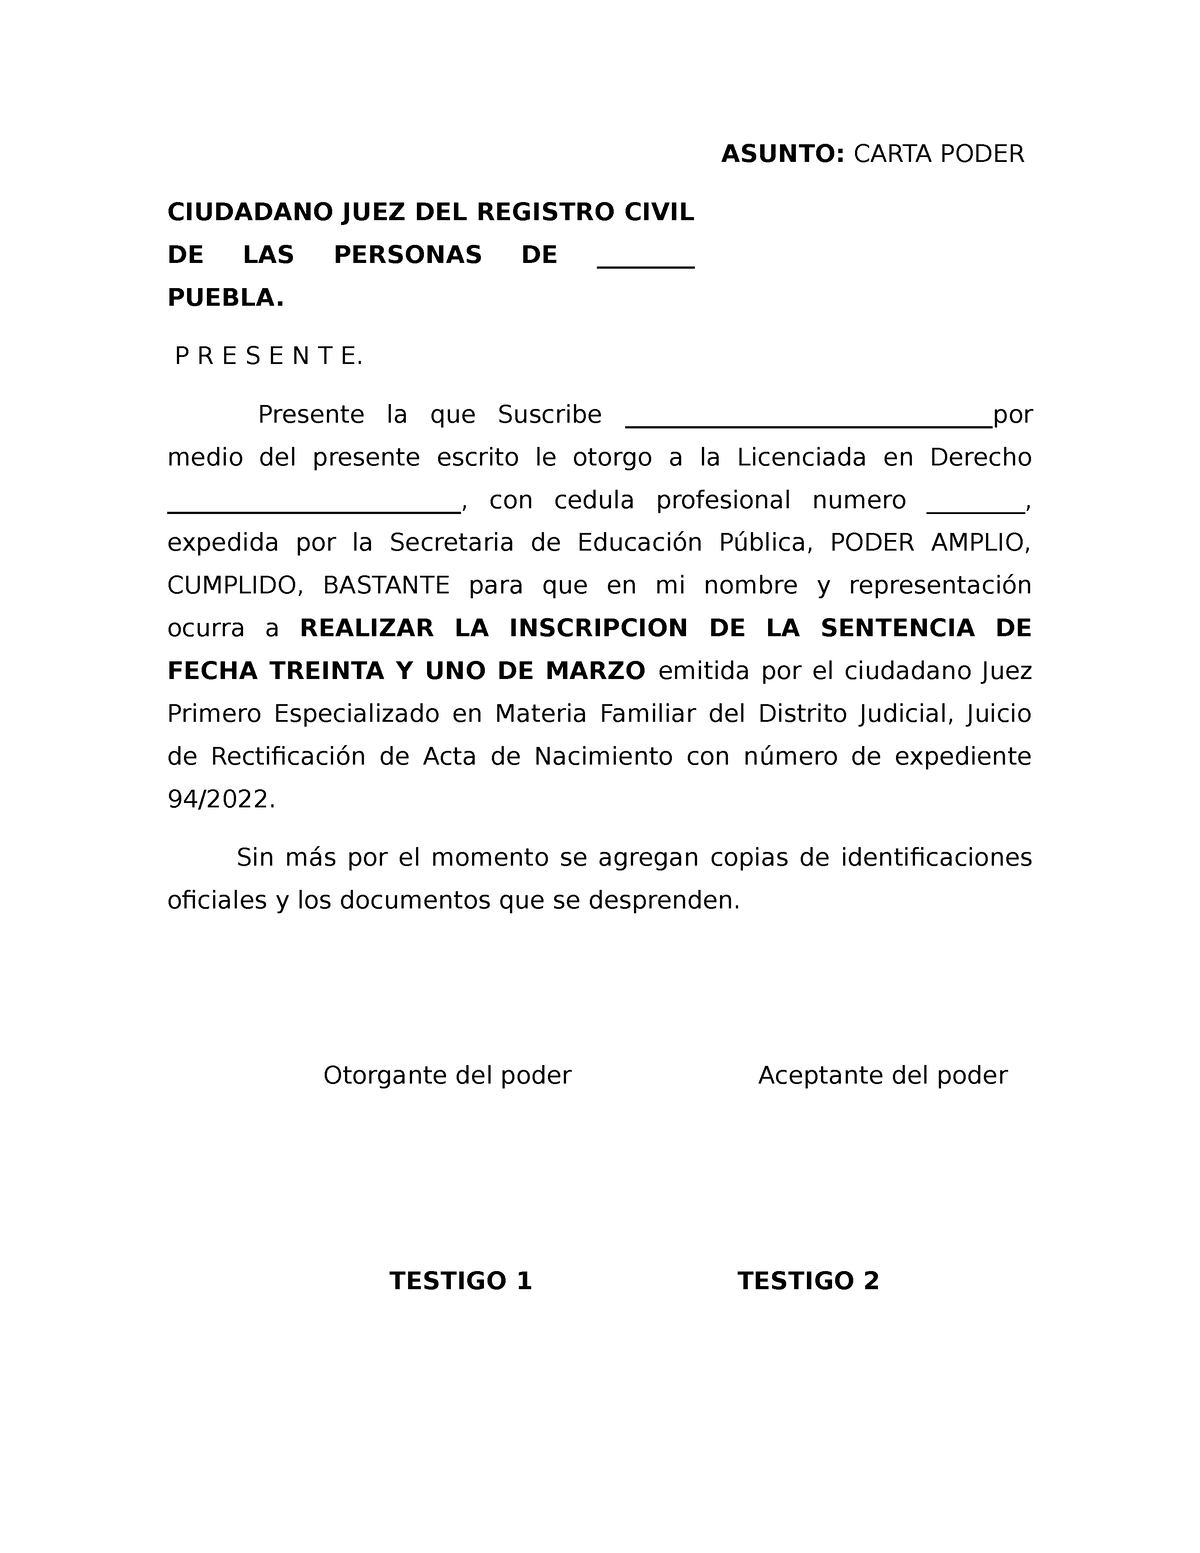 Carta poder subir - CUANDO REALIZAS UNA CORRECCION DE ACTA DE ...